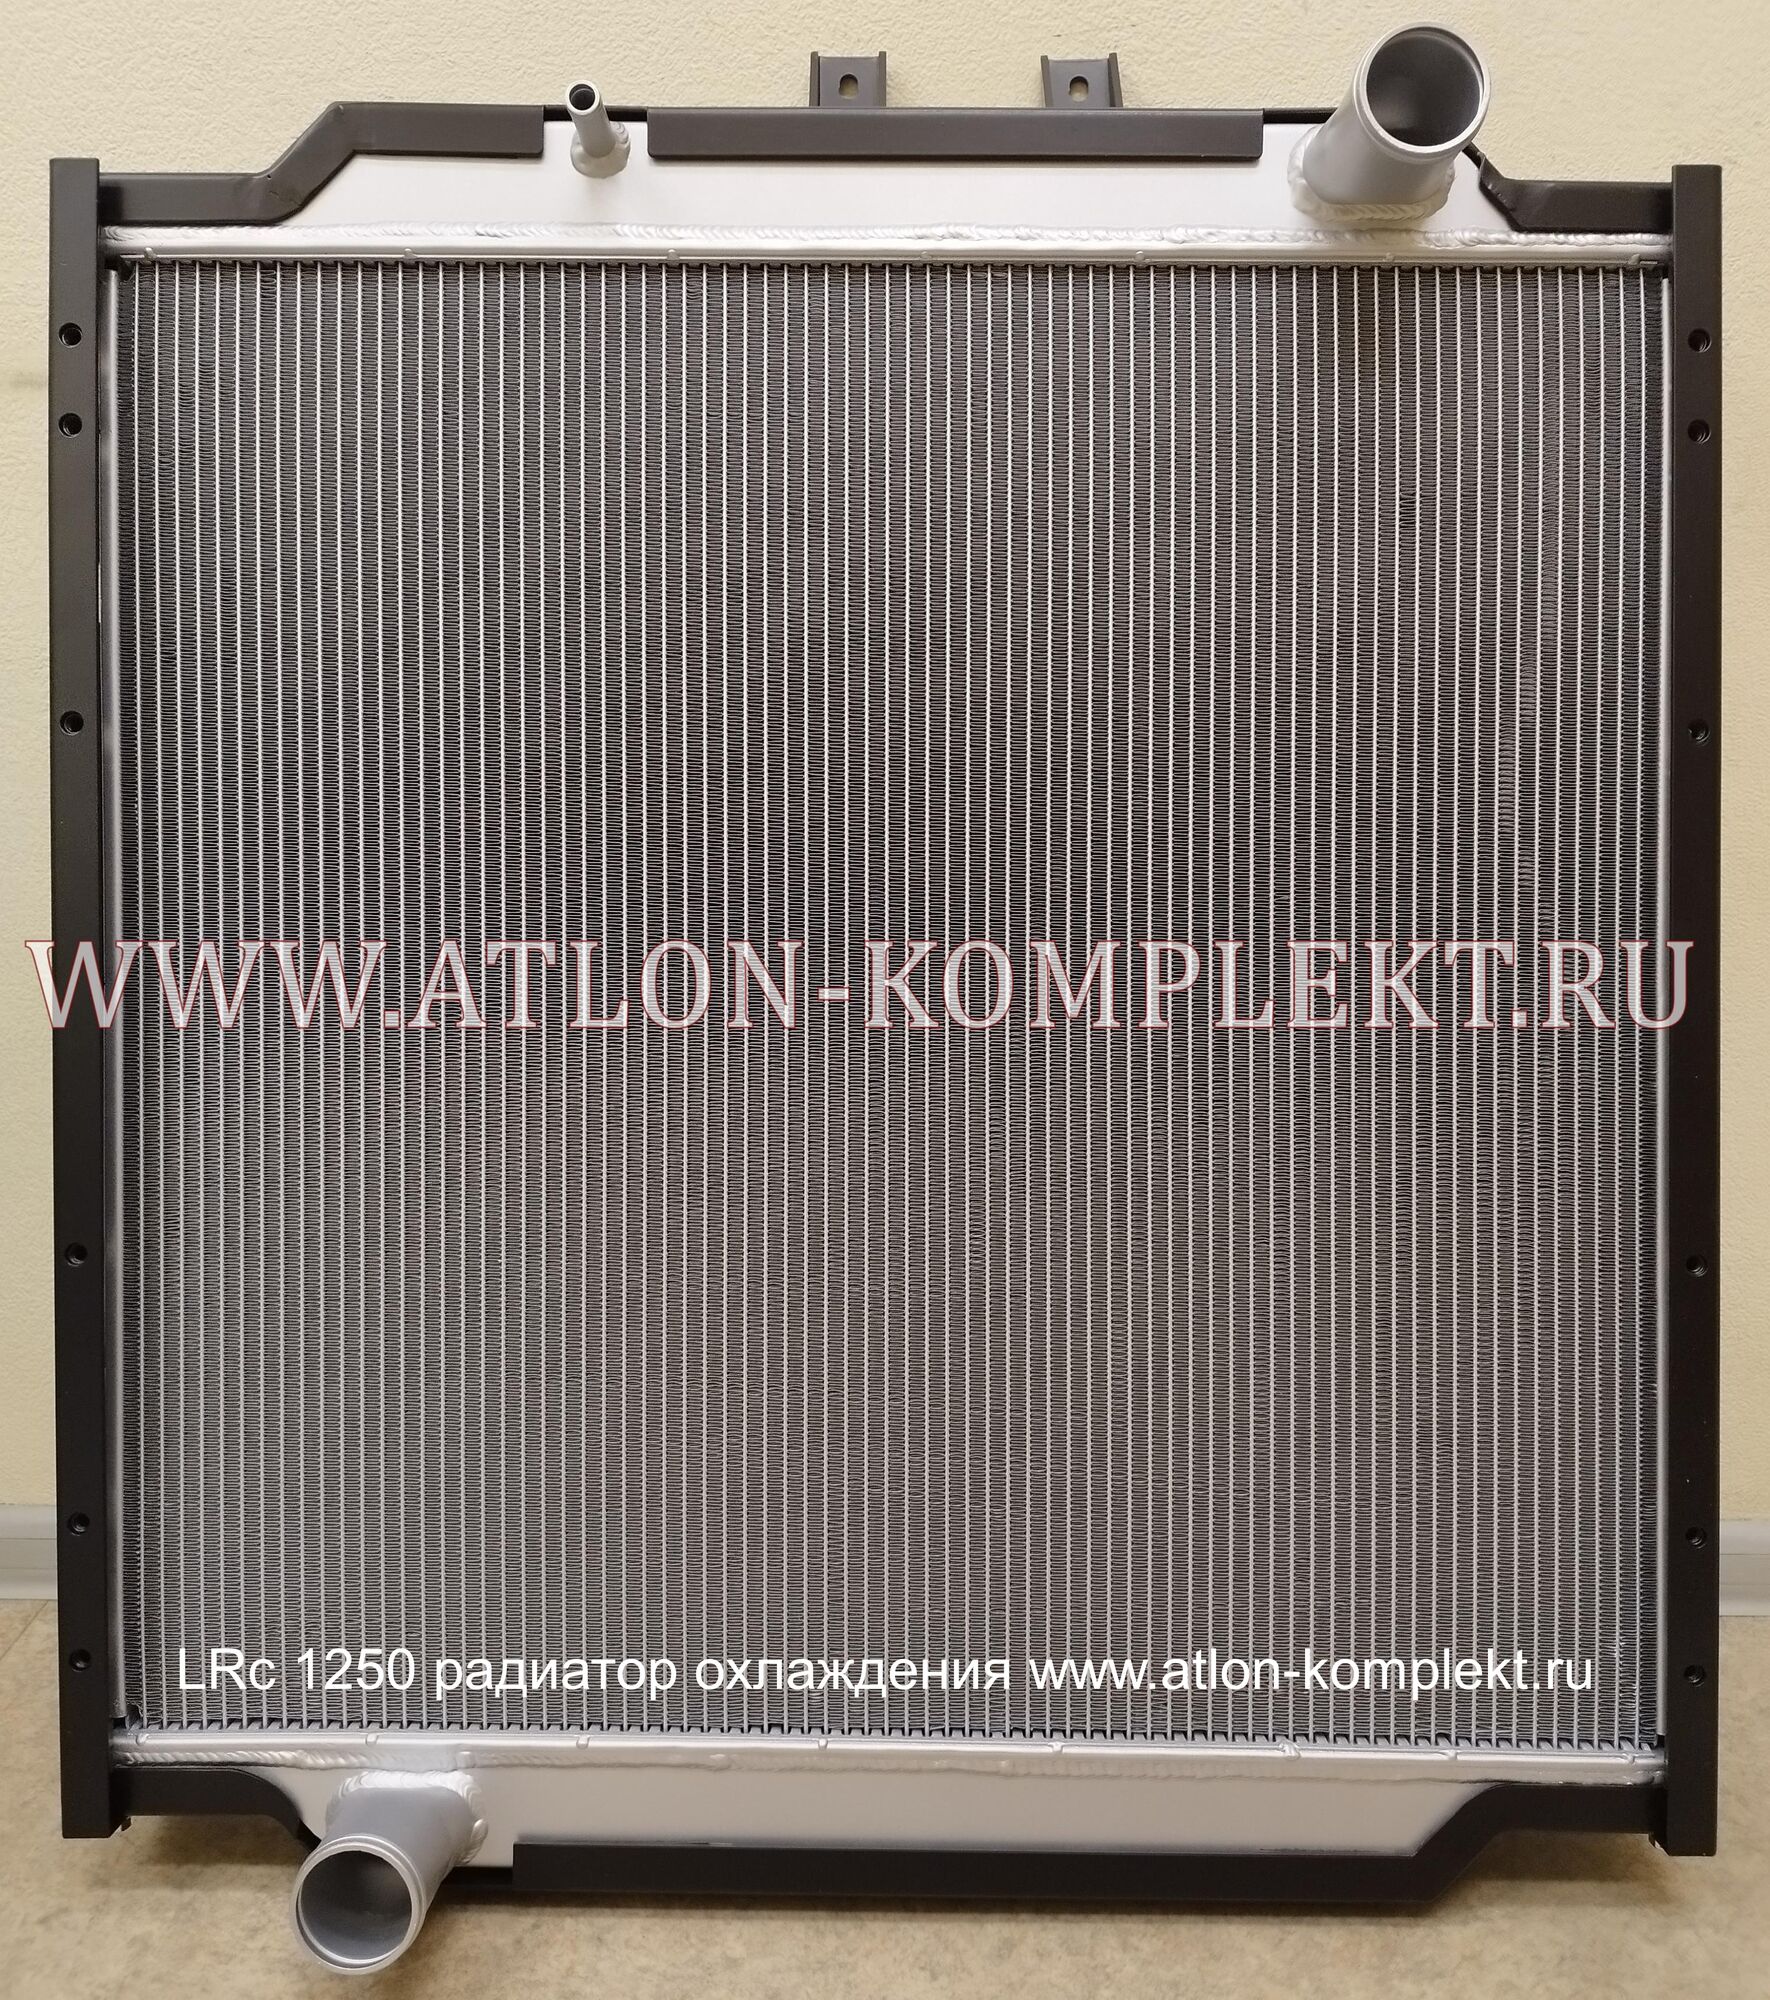 Радиатор МАЗ-5550B3, МАЗ-5440В3 с двигателем ЯМЗ-536 ЕВРО-4 LRc 1250 (5550В3А-1301010)